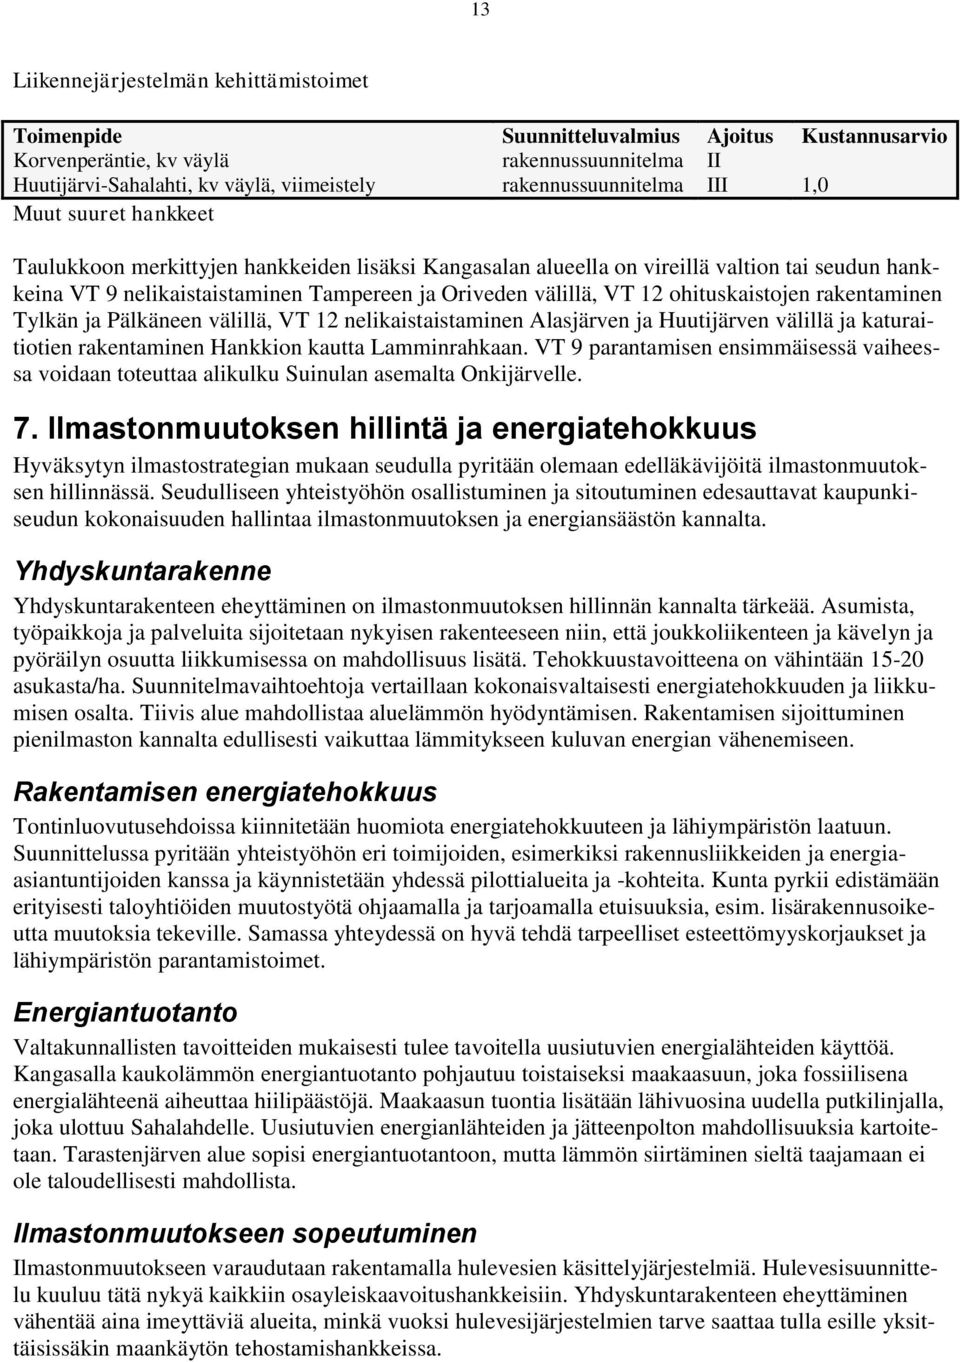 välillä, VT 12 ohituskaistojen rakentaminen Tylkän ja Pälkäneen välillä, VT 12 nelikaistaistaminen Alasjärven ja Huutijärven välillä ja katuraitiotien rakentaminen Hankkion kautta Lamminrahkaan.